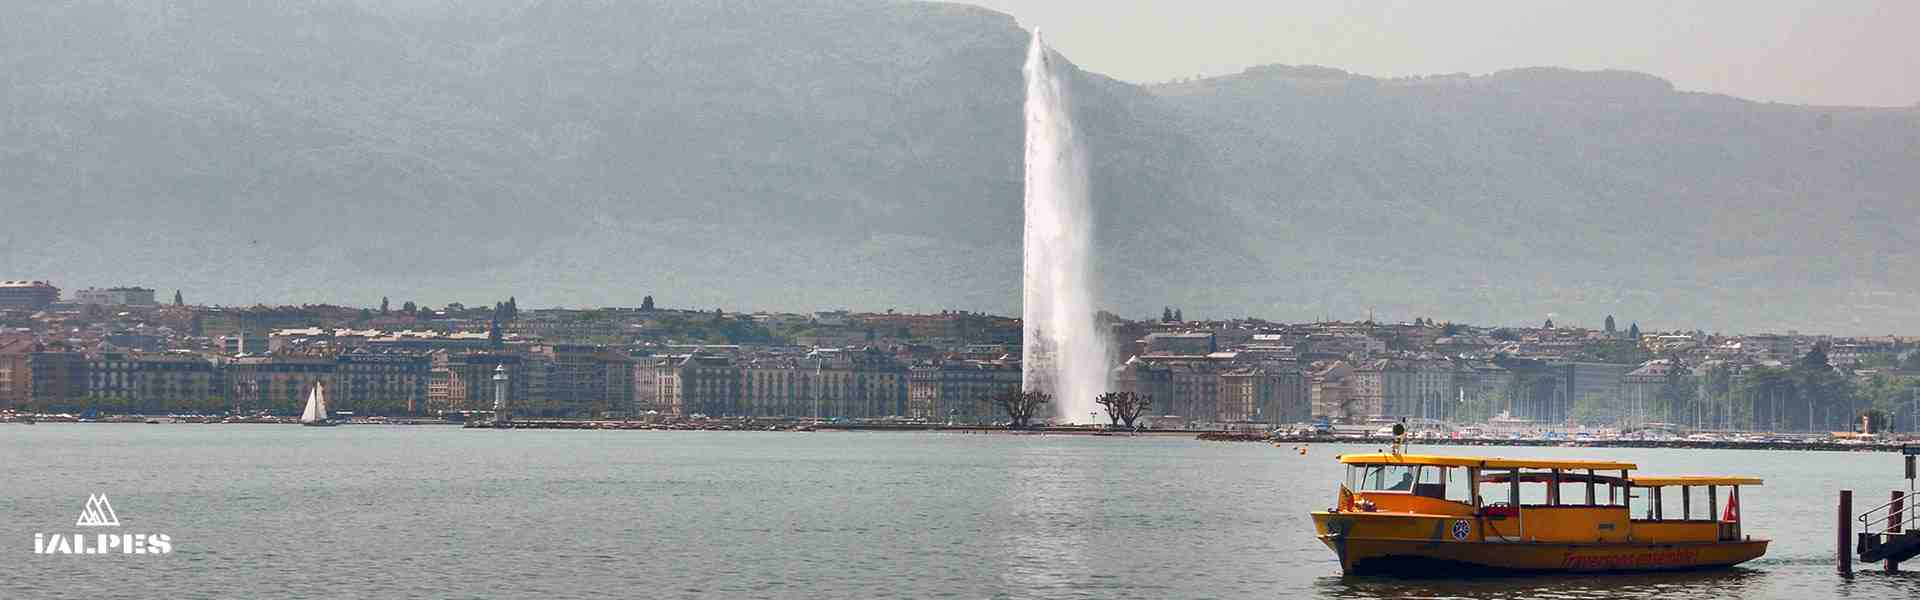 Rade de Genève et le jet d'eau, Suisse